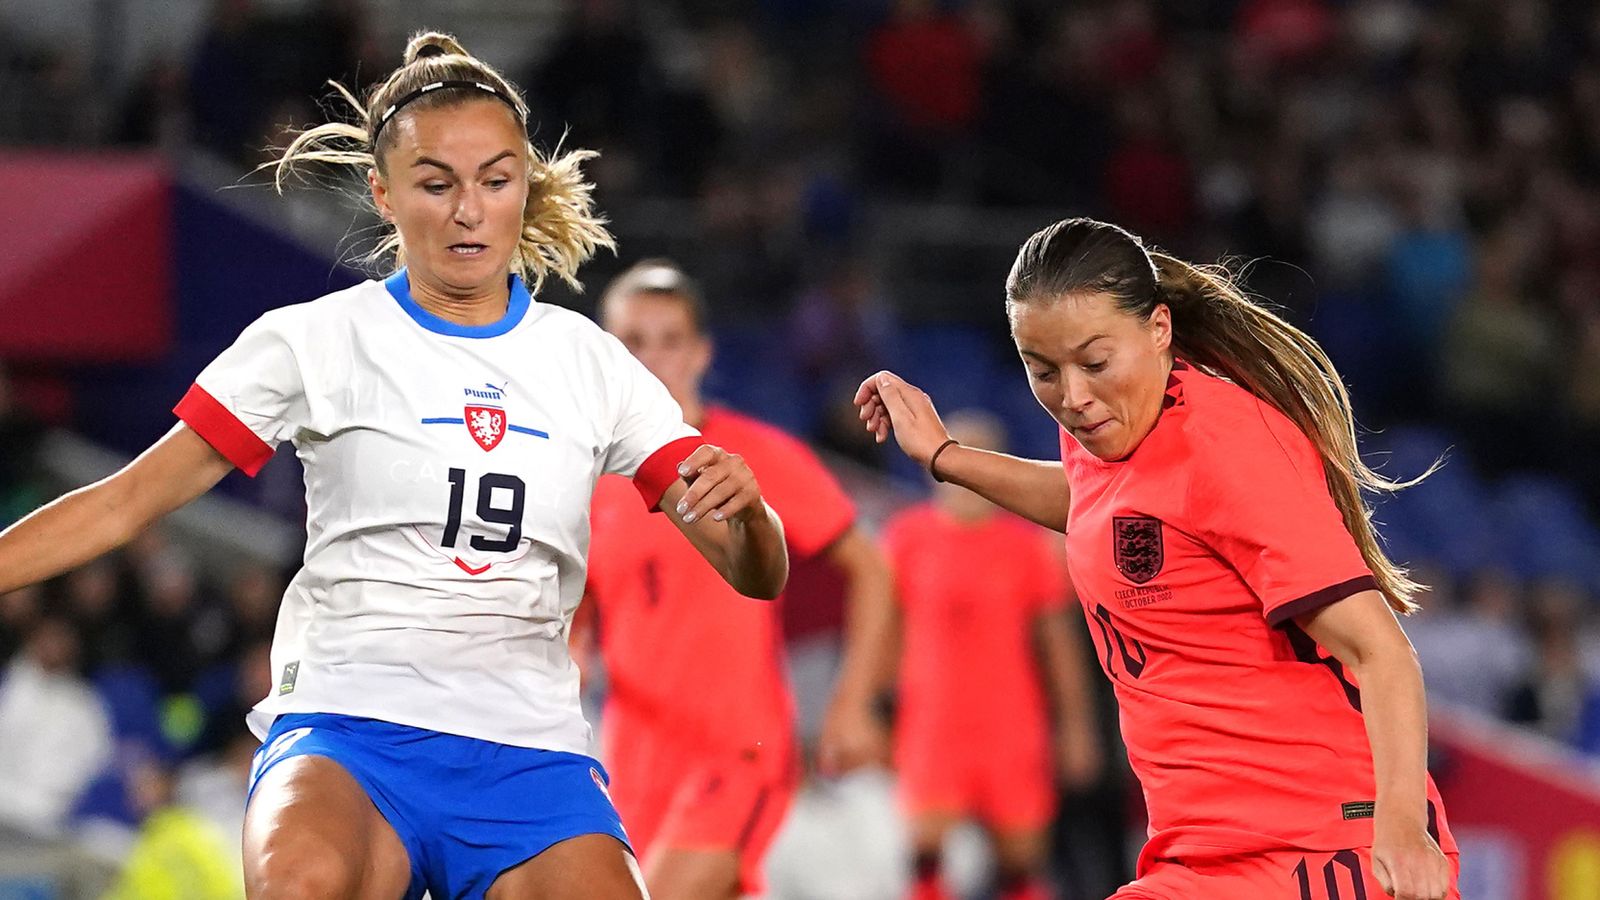 Anglie ženy 0:0 Česká republika ženy: lvice, které nedokázaly remizovat 0:0 v přátelském utkání Brightonu |  fotbalové zprávy